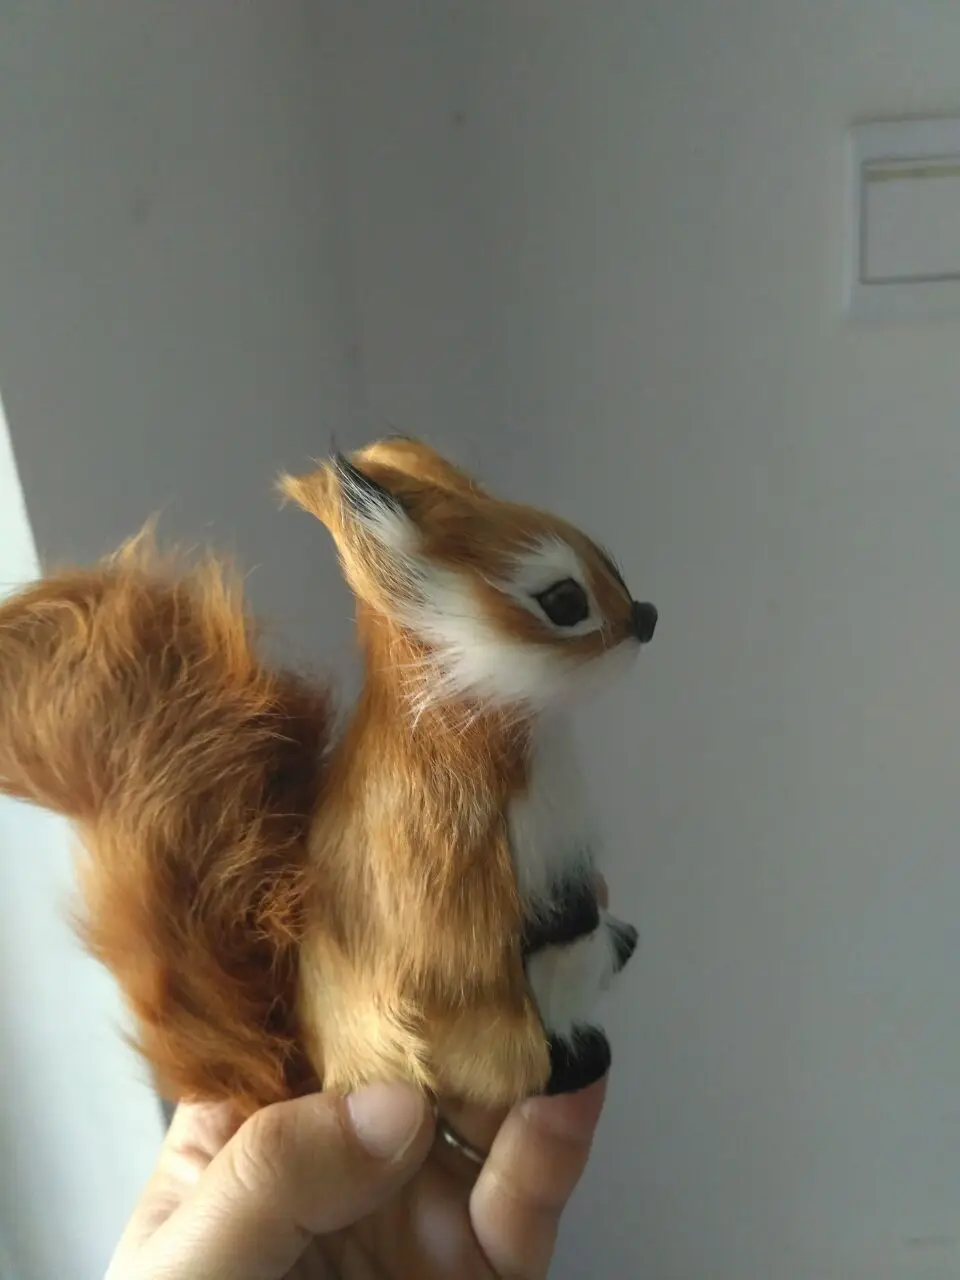 small simulation Squirrel model toy polyethylene & furs Squirrel doll 12x8cm 